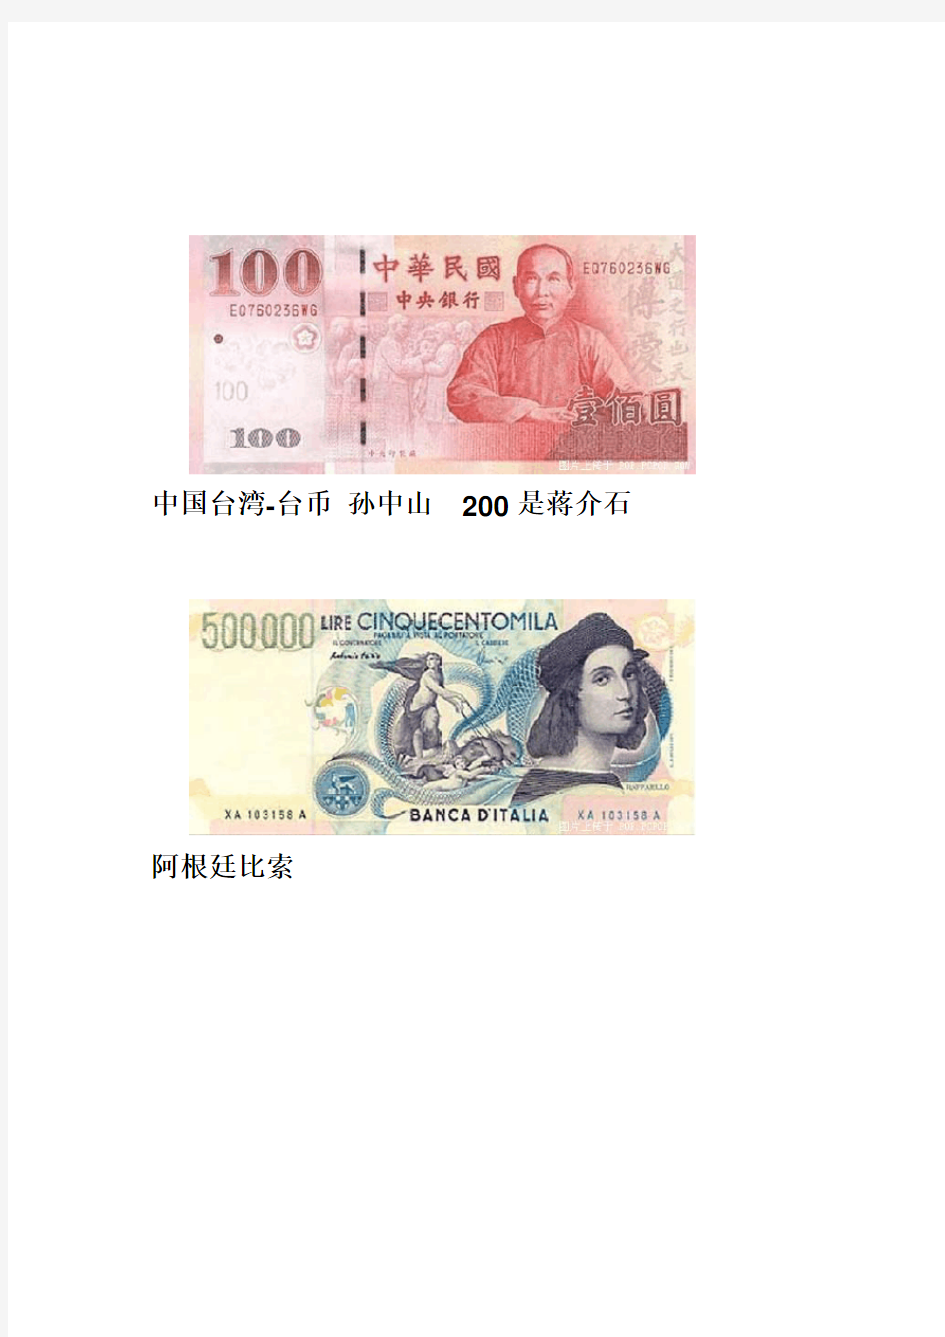 世界各国的货币名称及图片